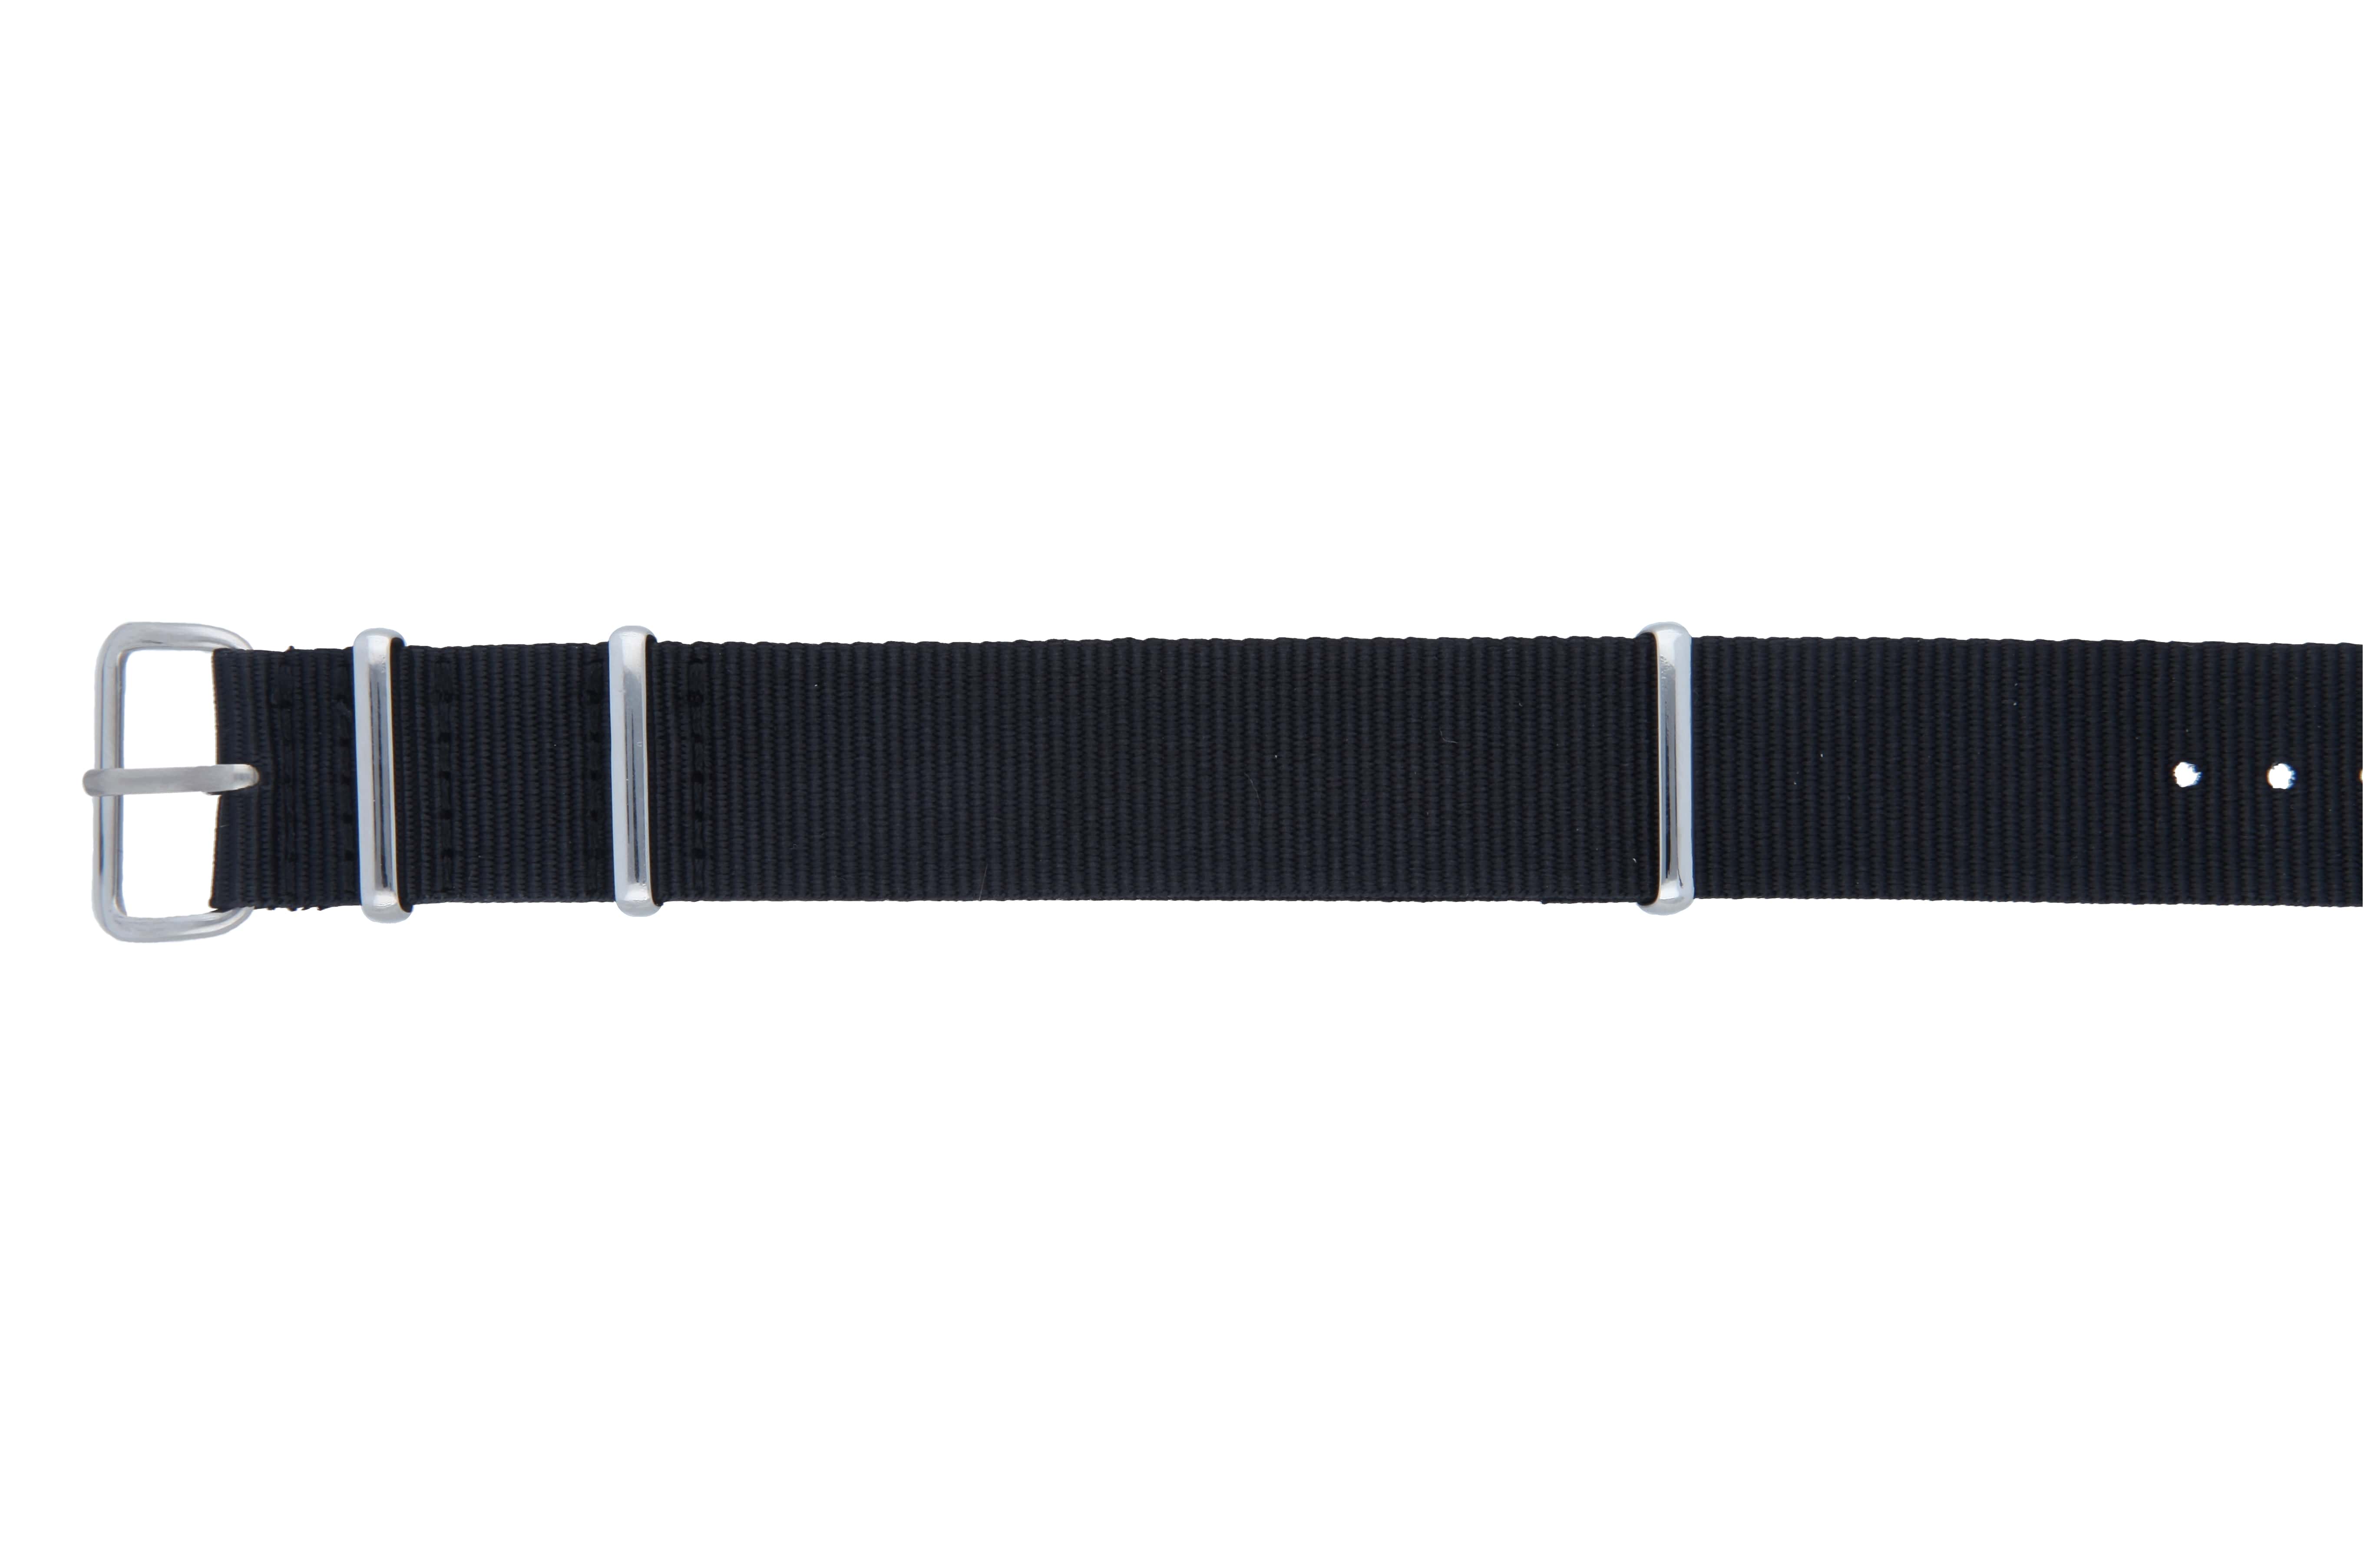 Unfastened MedicAlert endurance medical ID bracelet strap in black